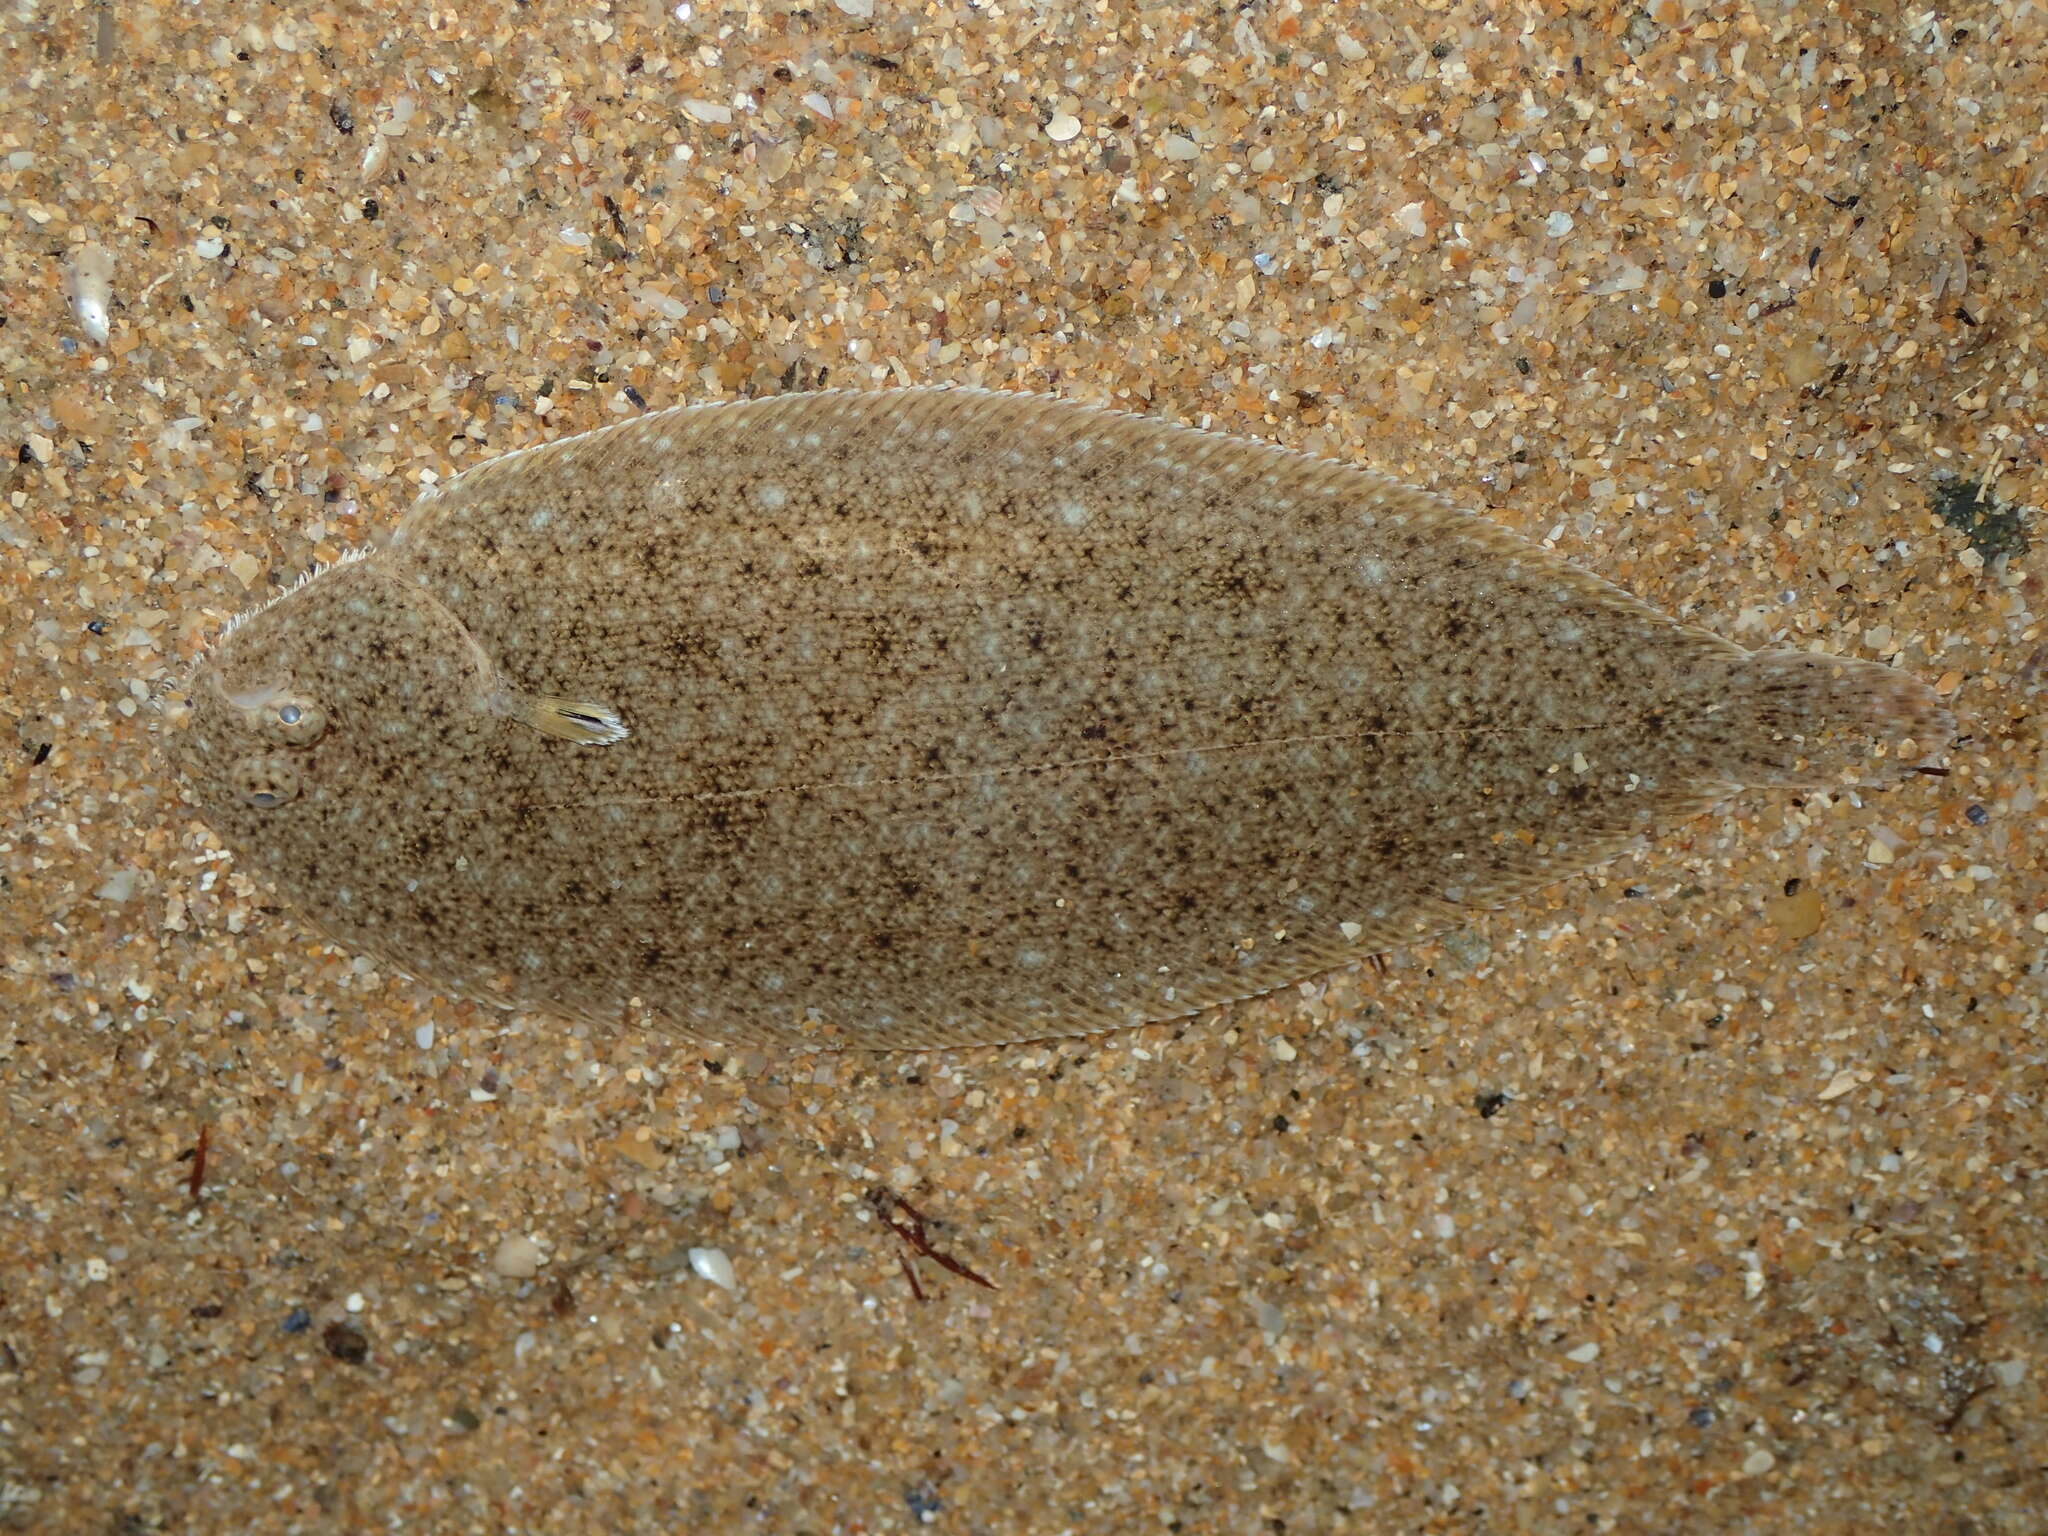 Dil balıği resmi